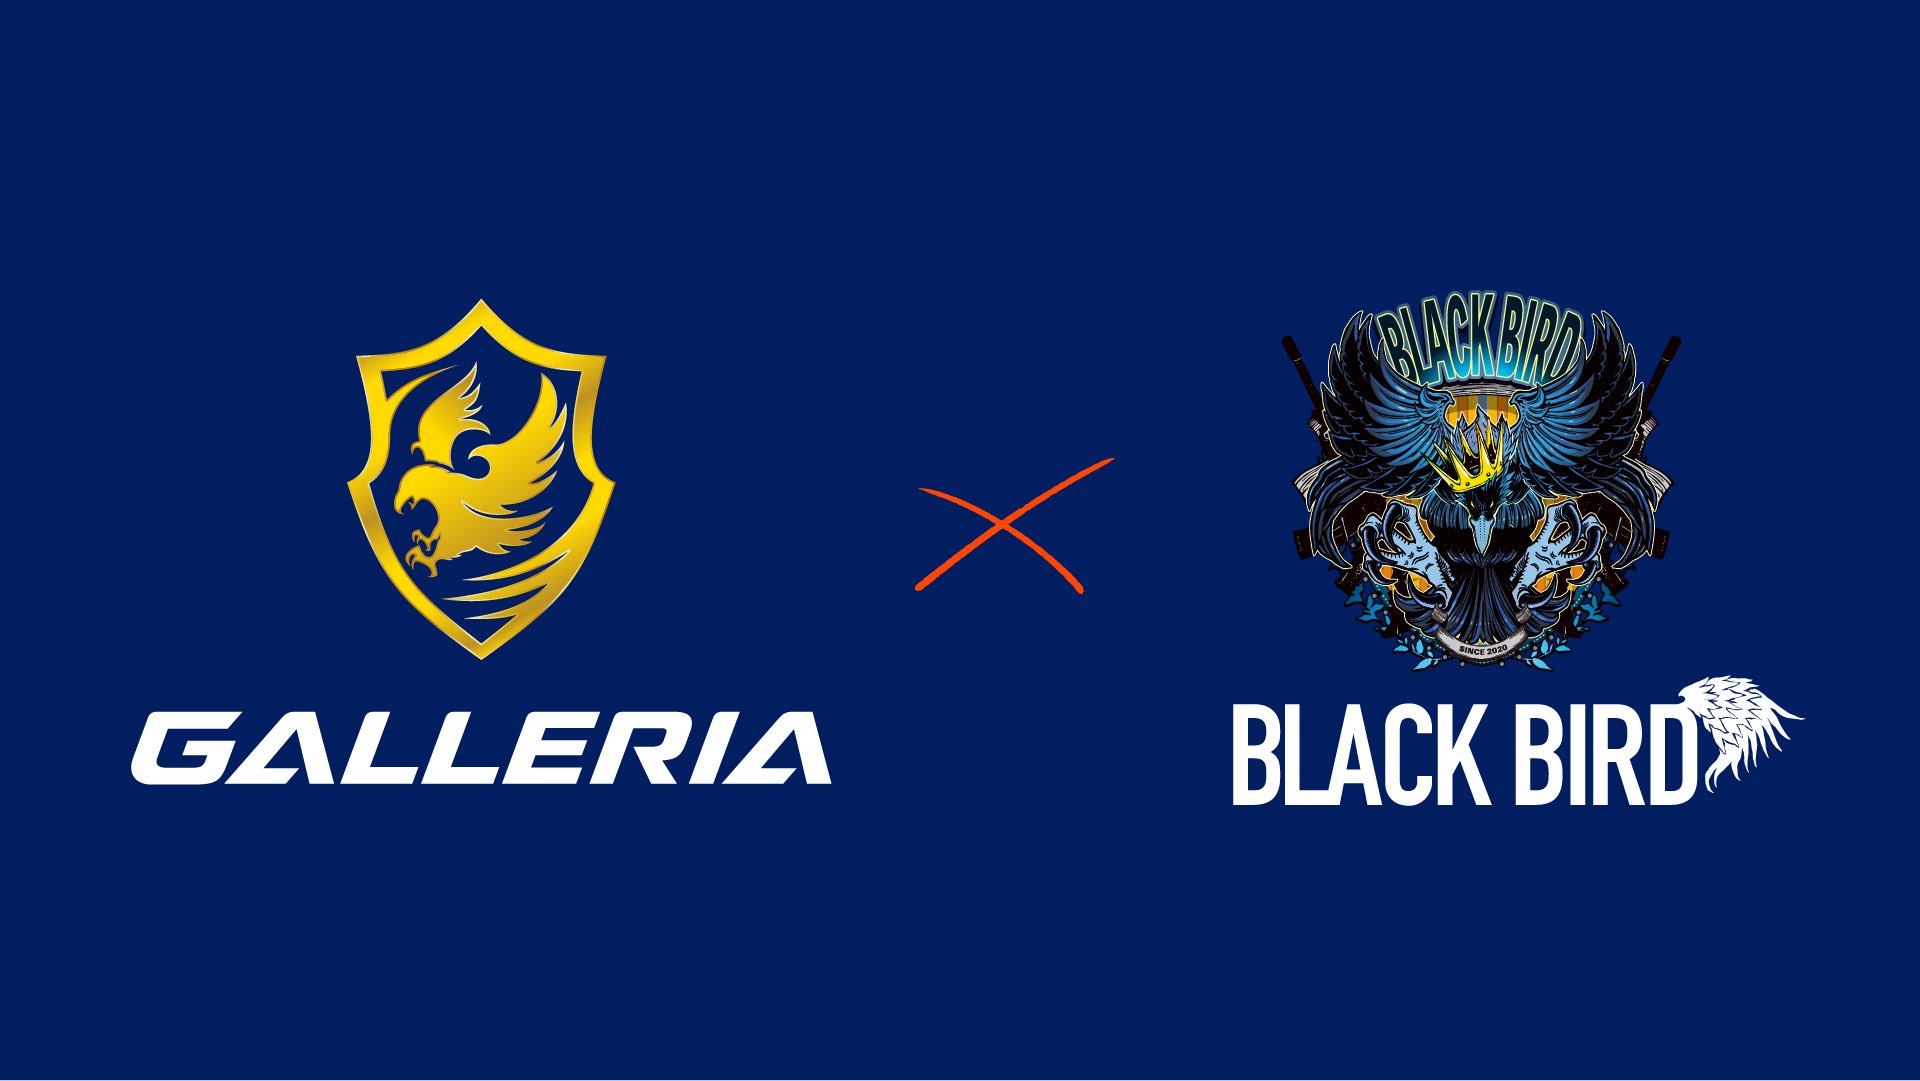 プロeスポーツチーム Blackbird とゲーミングpc ガレリア がスポンサーシップ契約を締結 Negitaku Org Esports